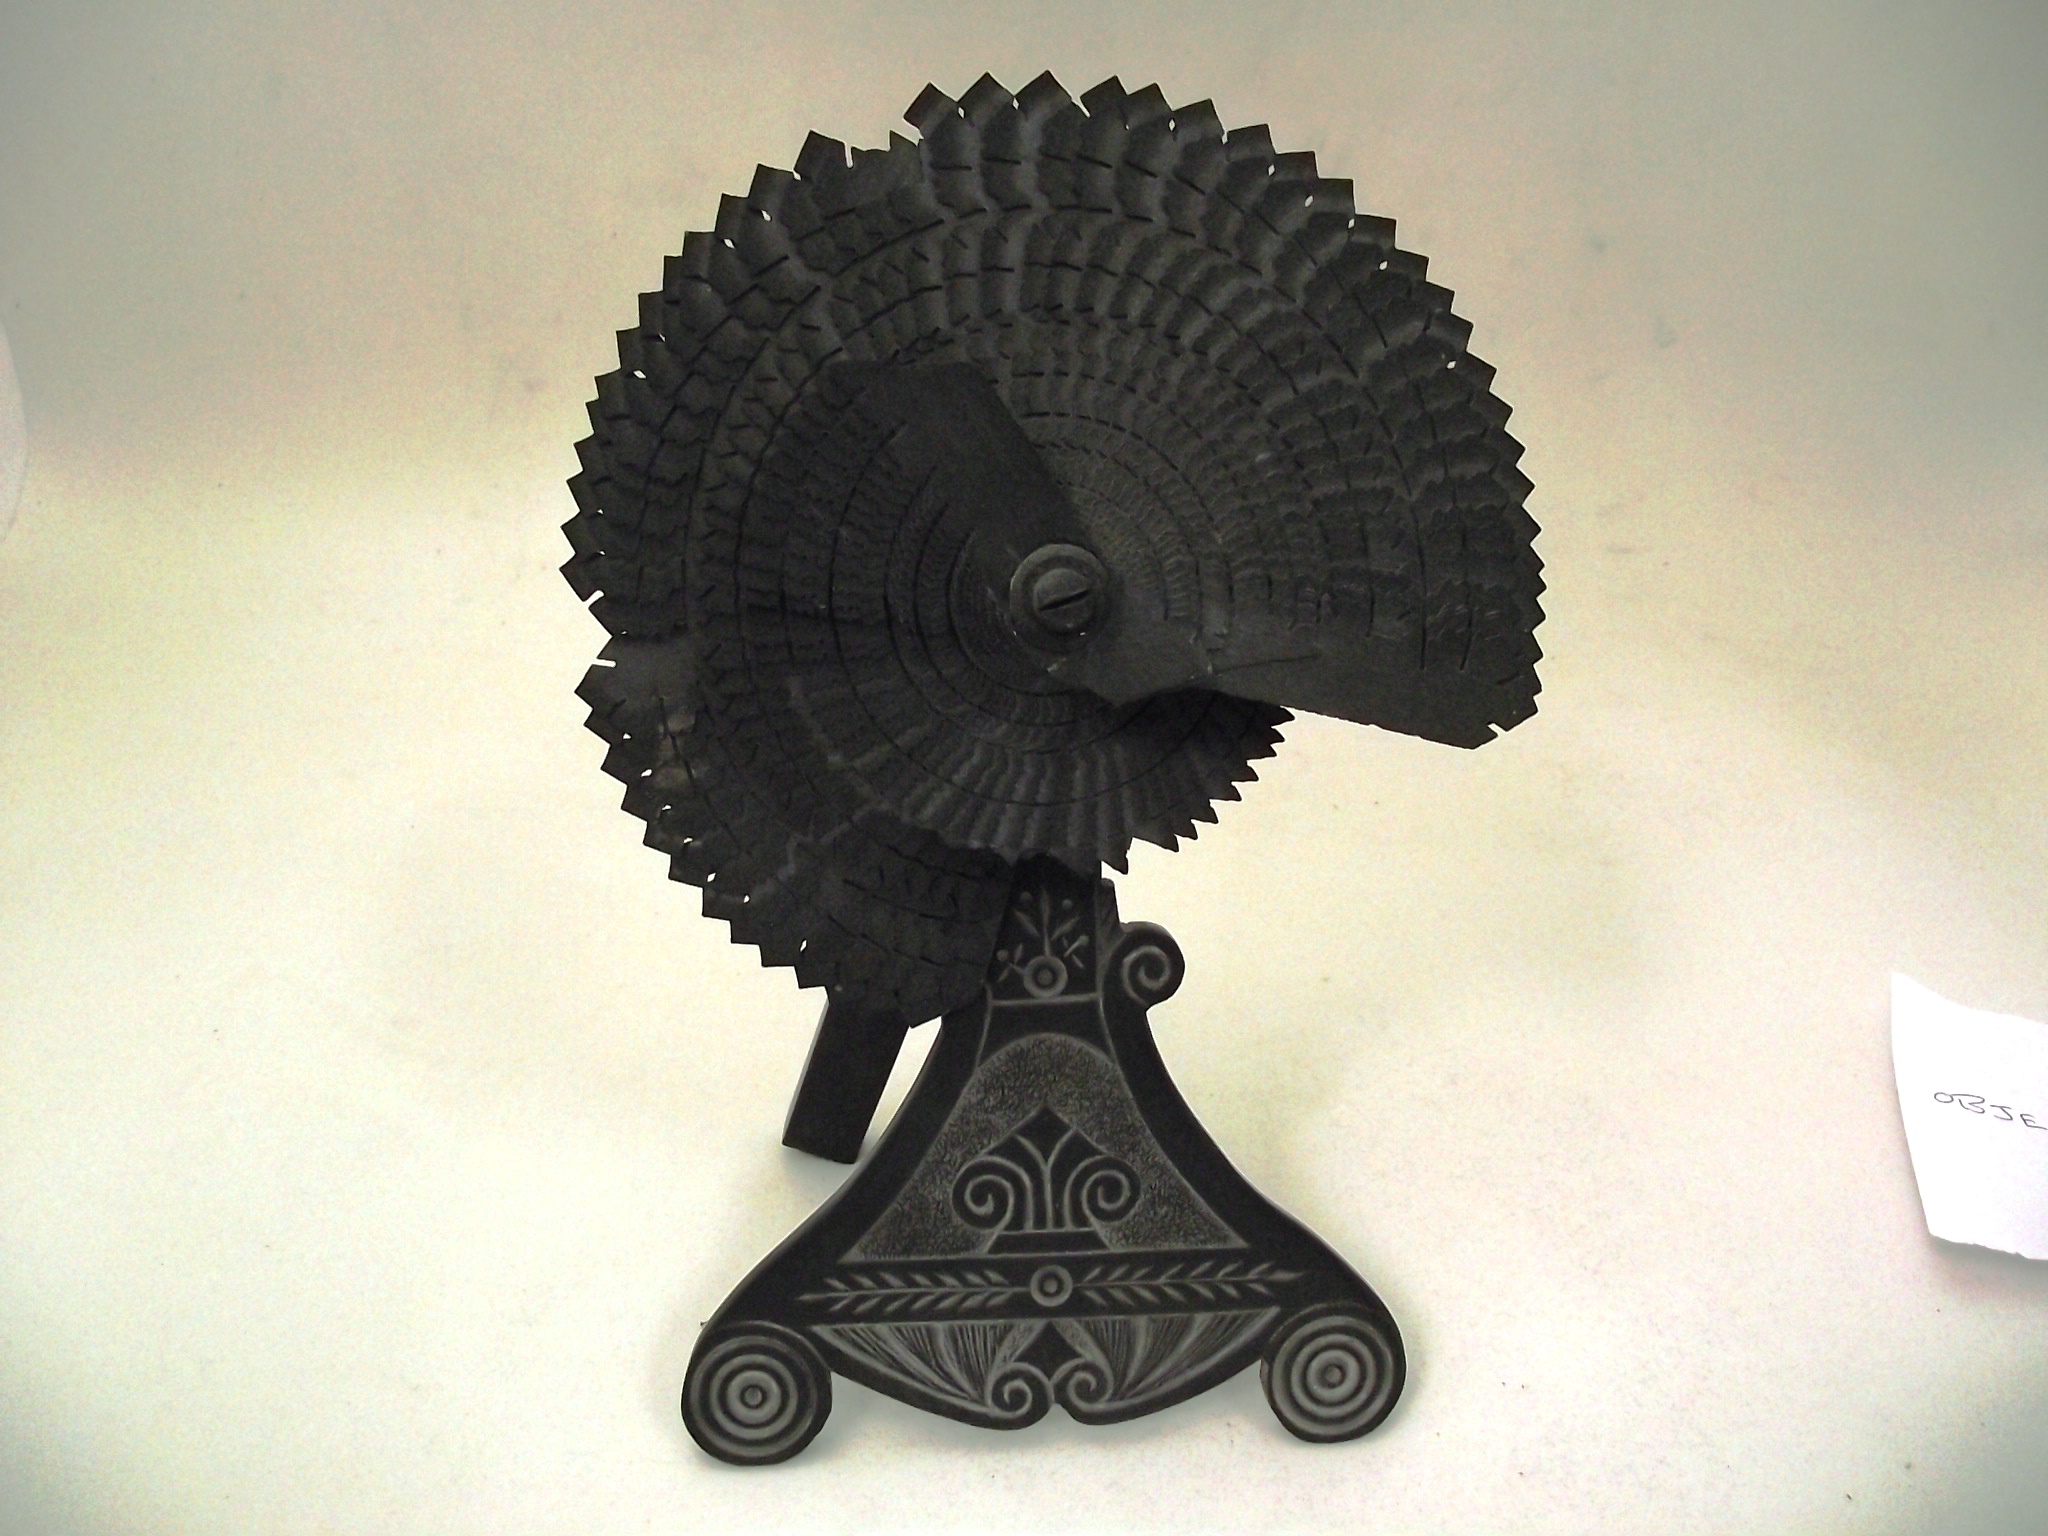 Fan ornament made of Welsh slate